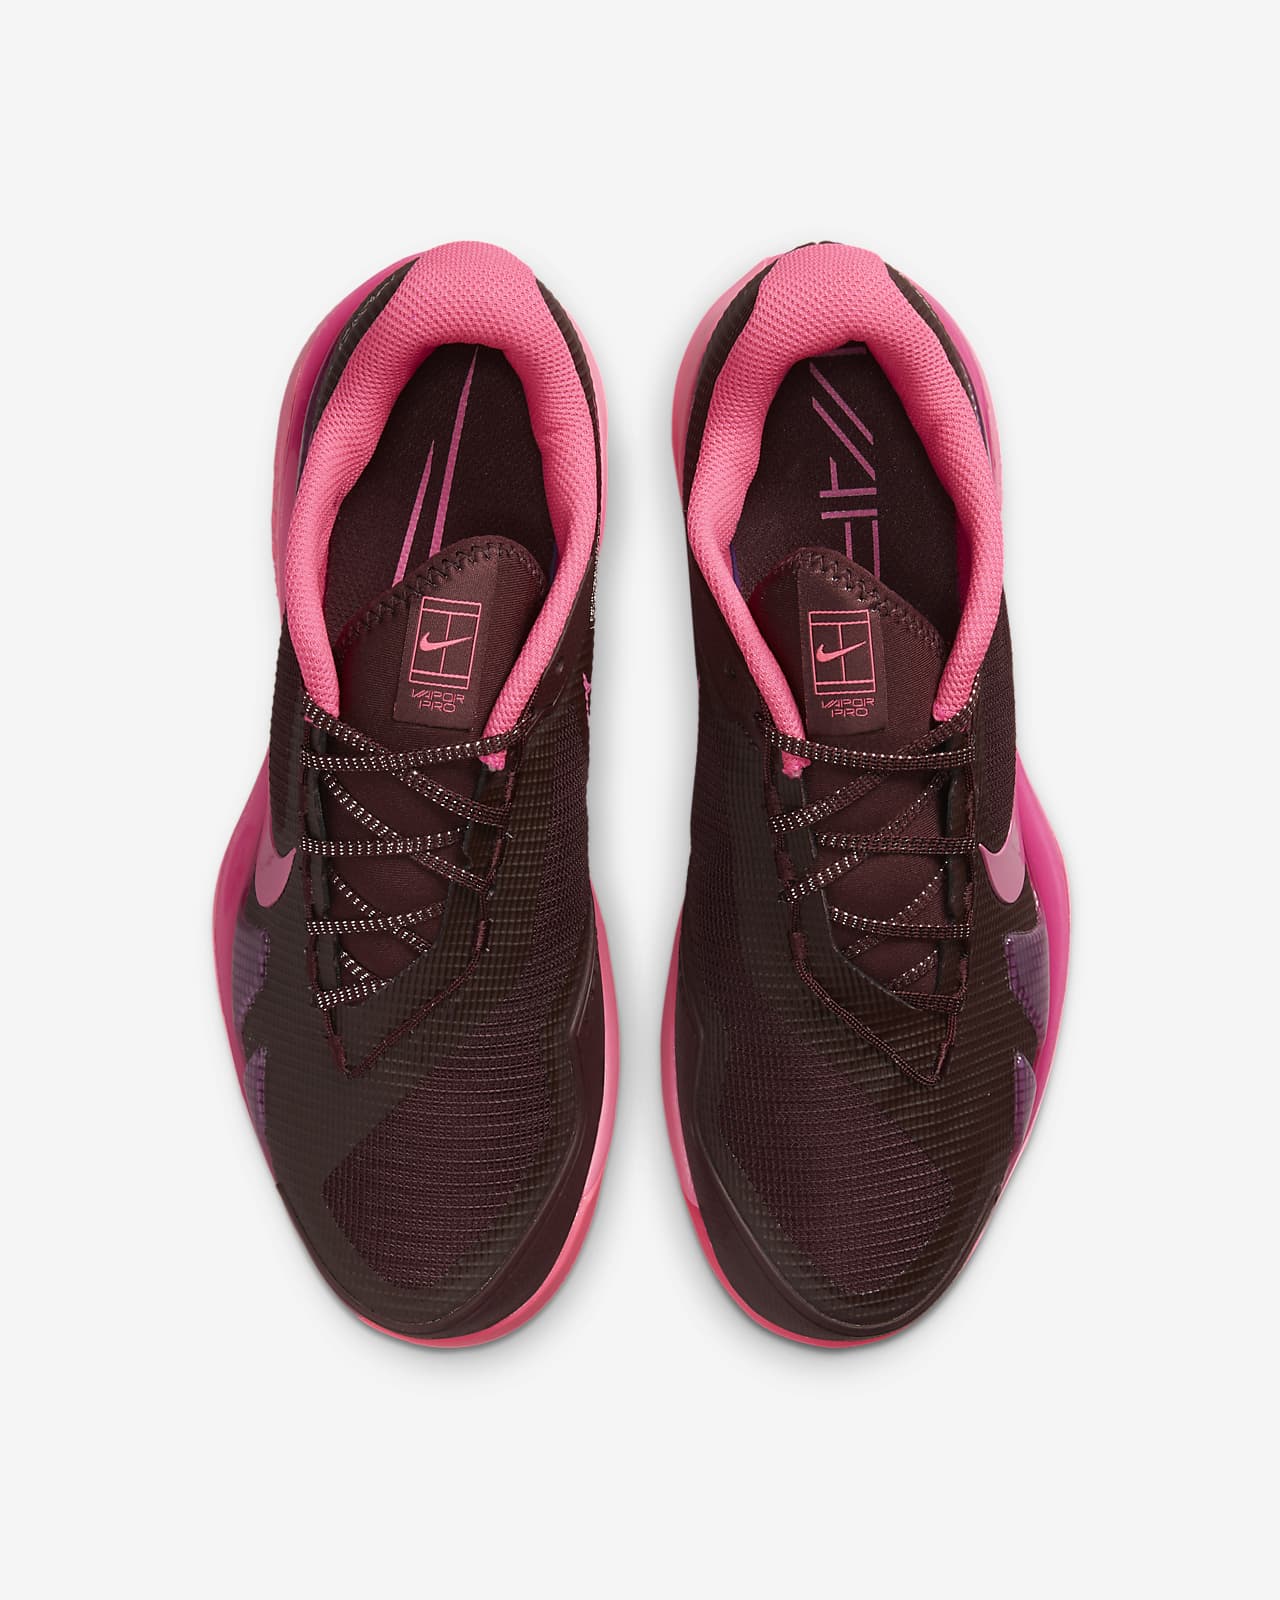 Significativo recepción Inválido NikeCourt Zoom Vapor Pro Premium Zapatillas de tenis de pista rápida - Mujer.  Nike ES